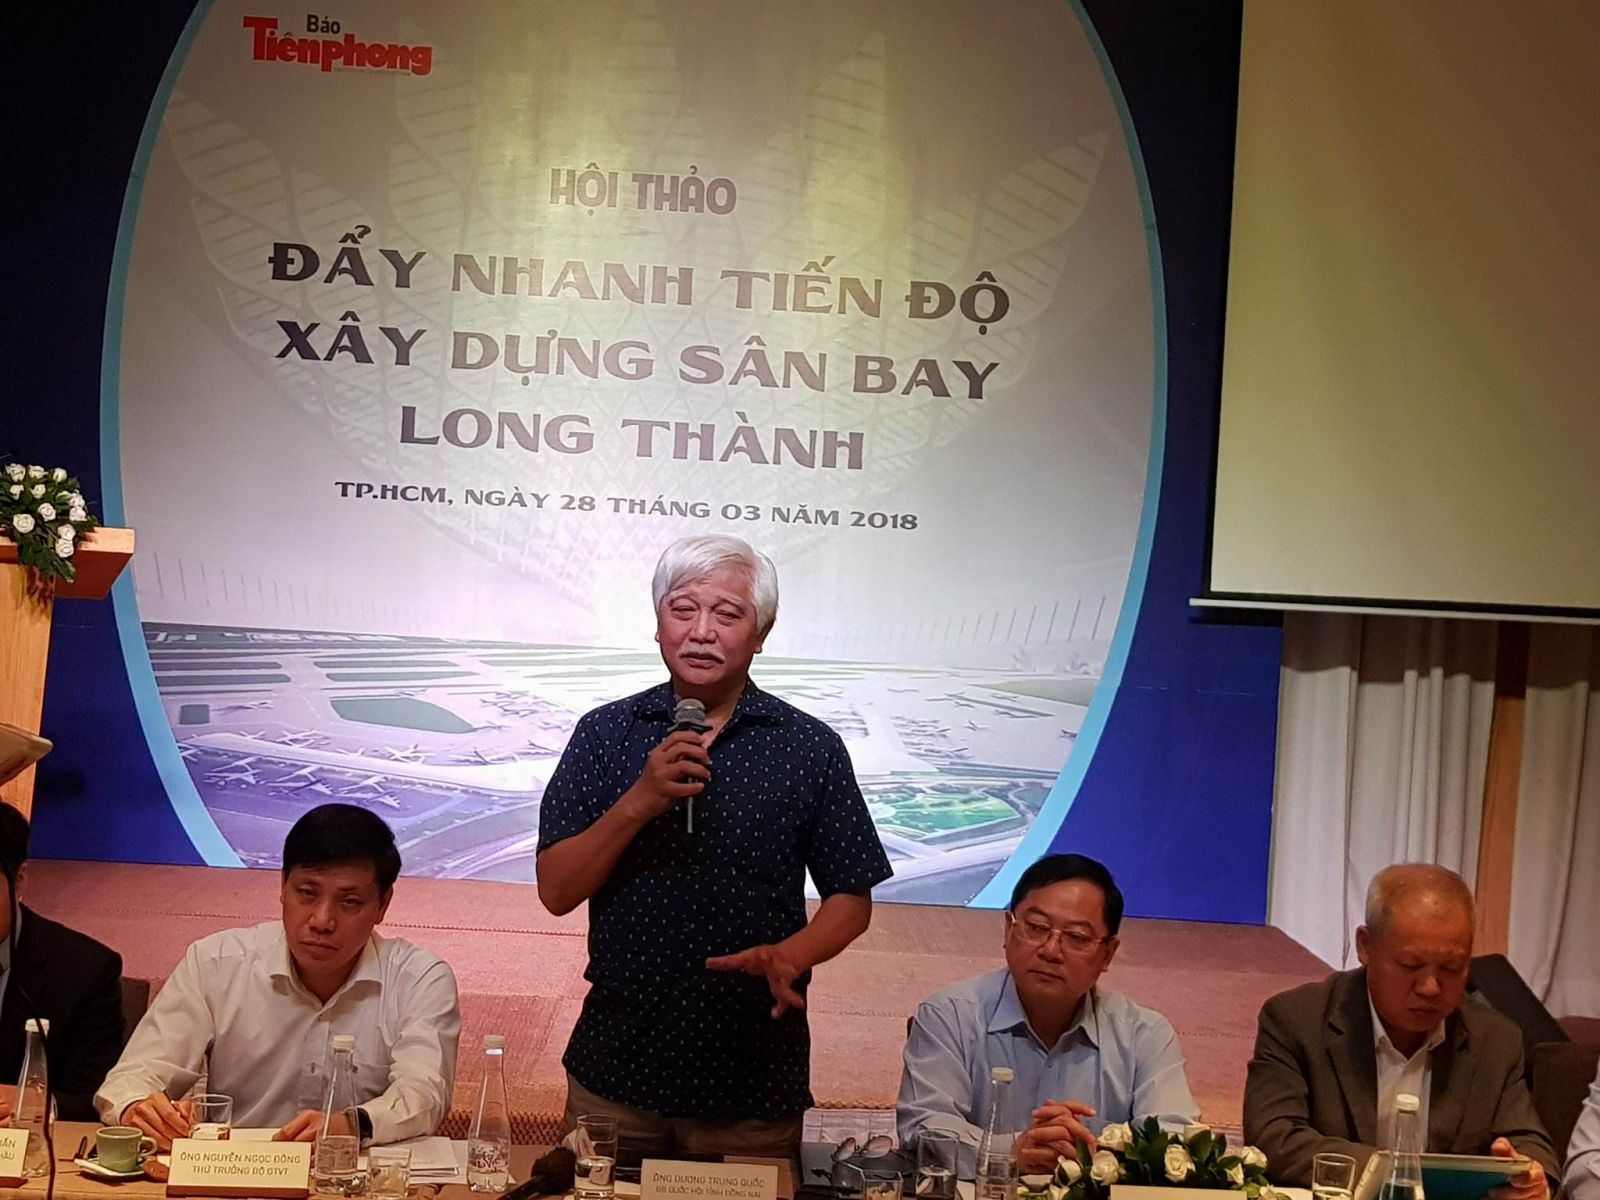 Nhà sử học Dương Trung Quốc, Đại biểu quốc hội tỉnh Đồng Nai chia sẻ những khó khăn thách thức mà Đồng Nai đang gặp tại Dự án Sân bay Quốc tế Long Thành.